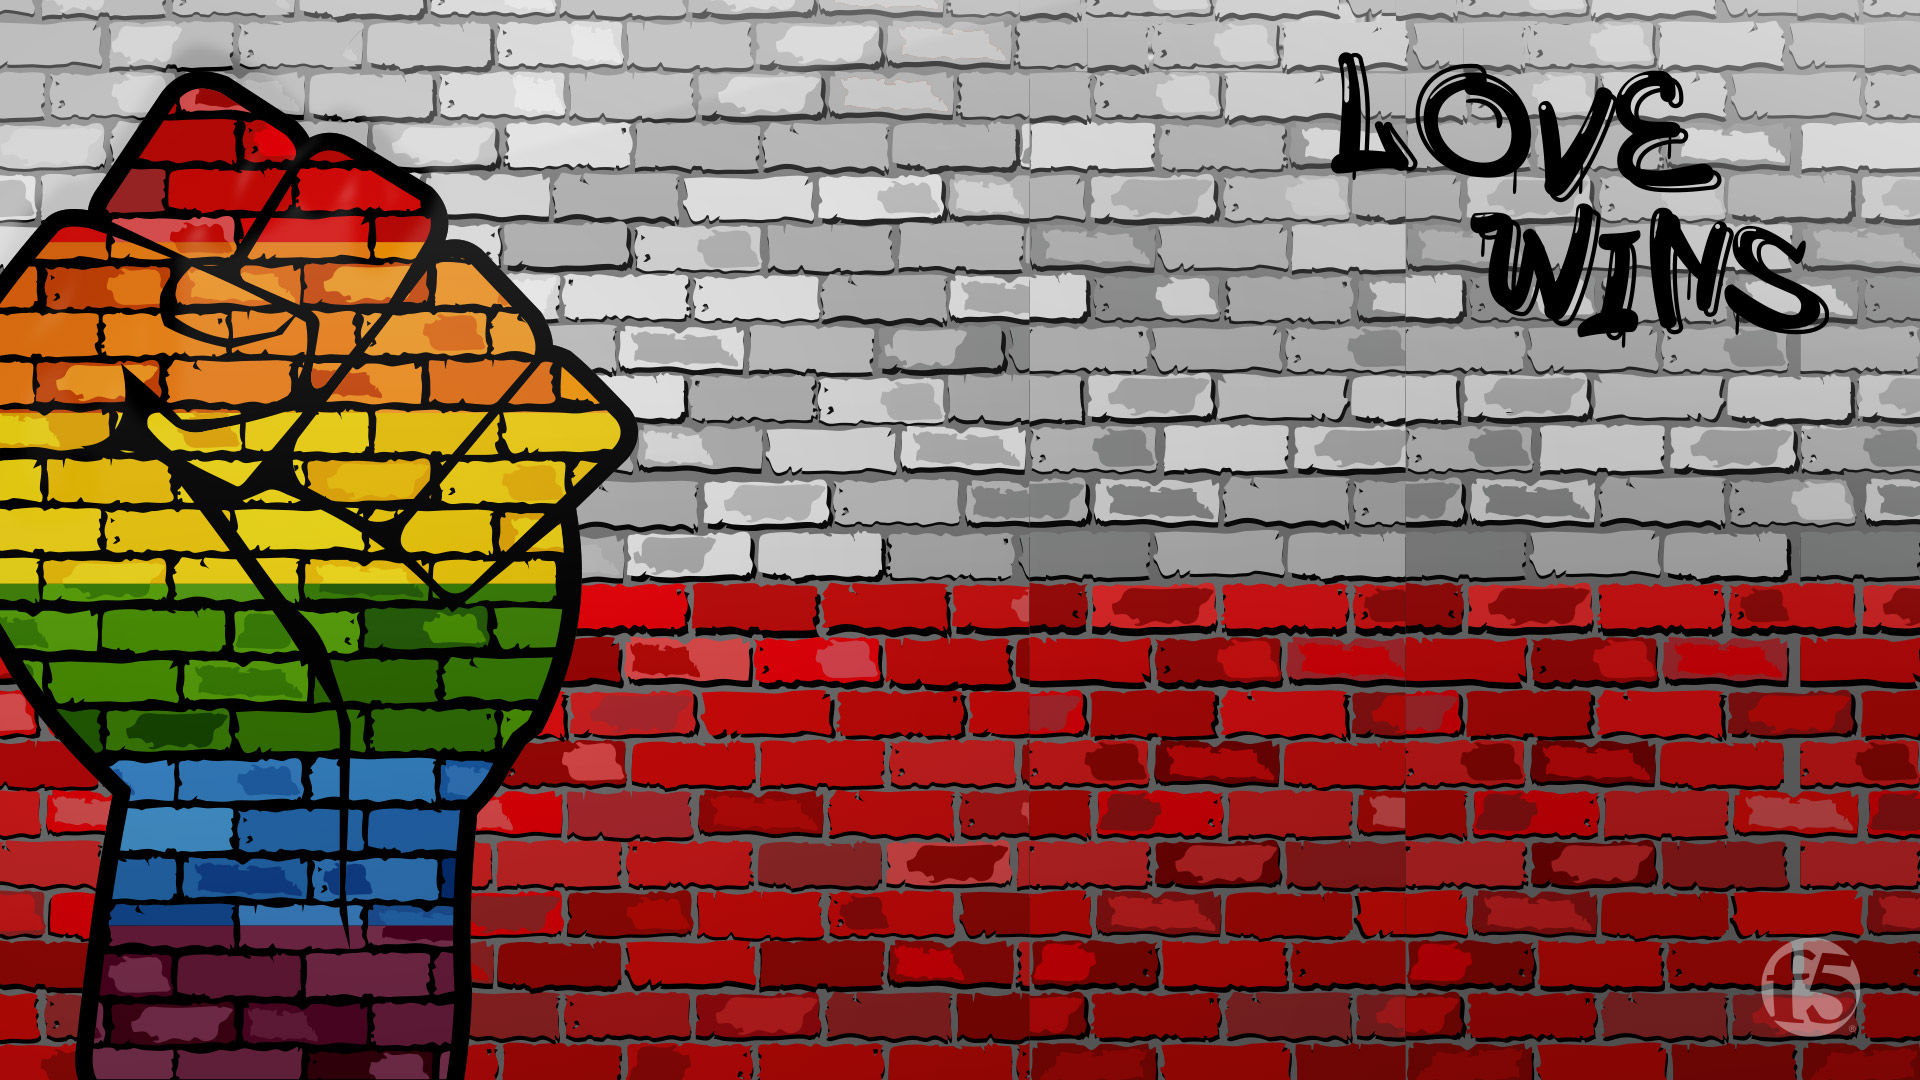 Pride Wallpaper Images  Free Download on Freepik